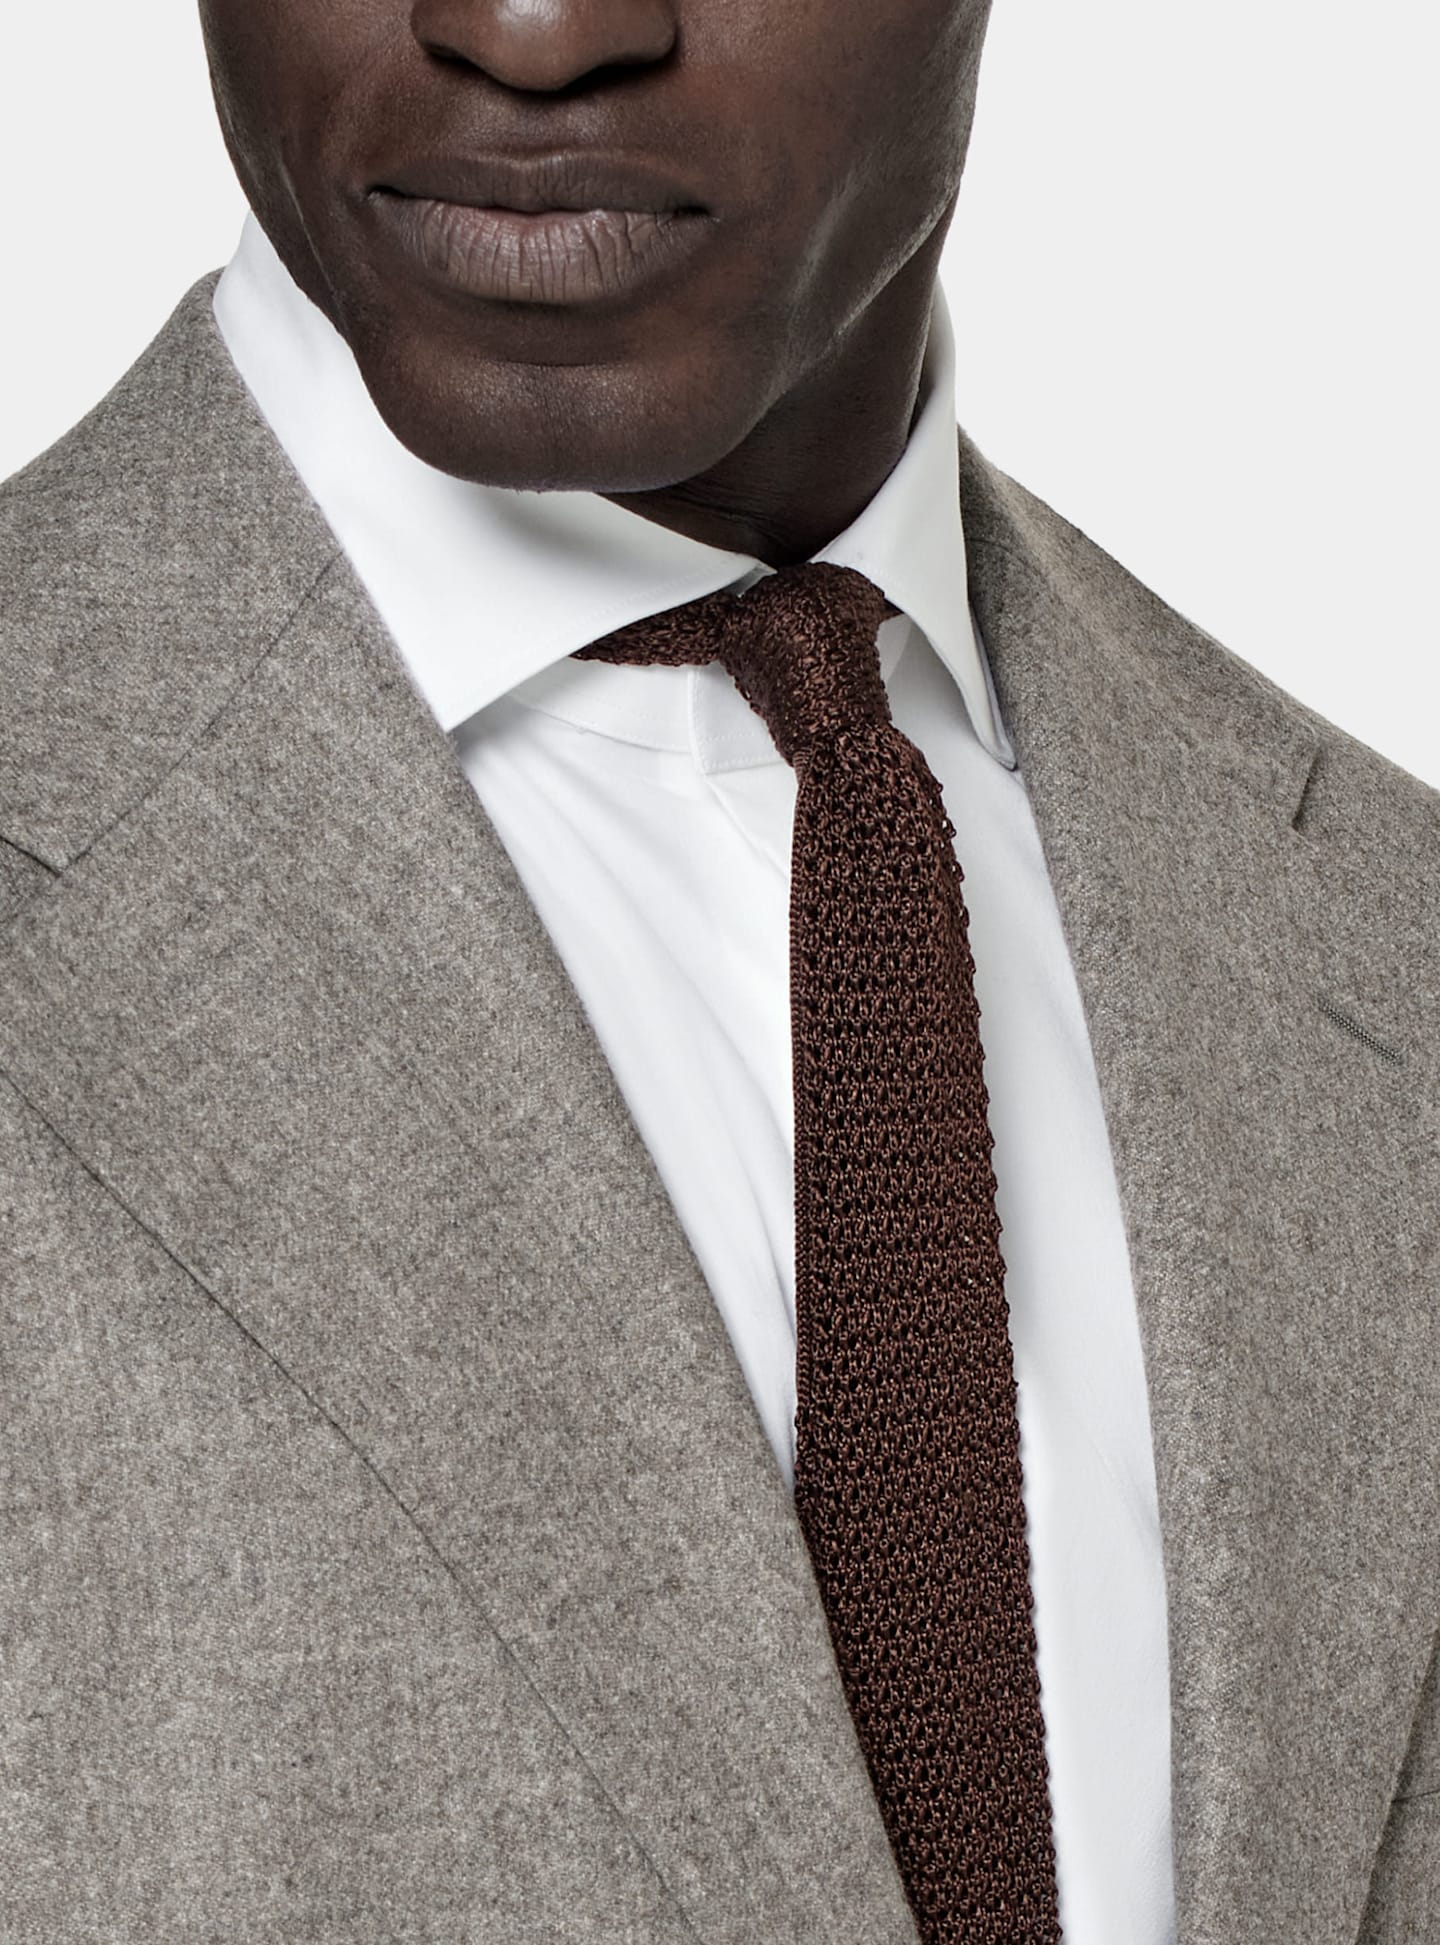 Detalle de un traje gris de corte sencillo con corbata de punto marrón hecha en seda.